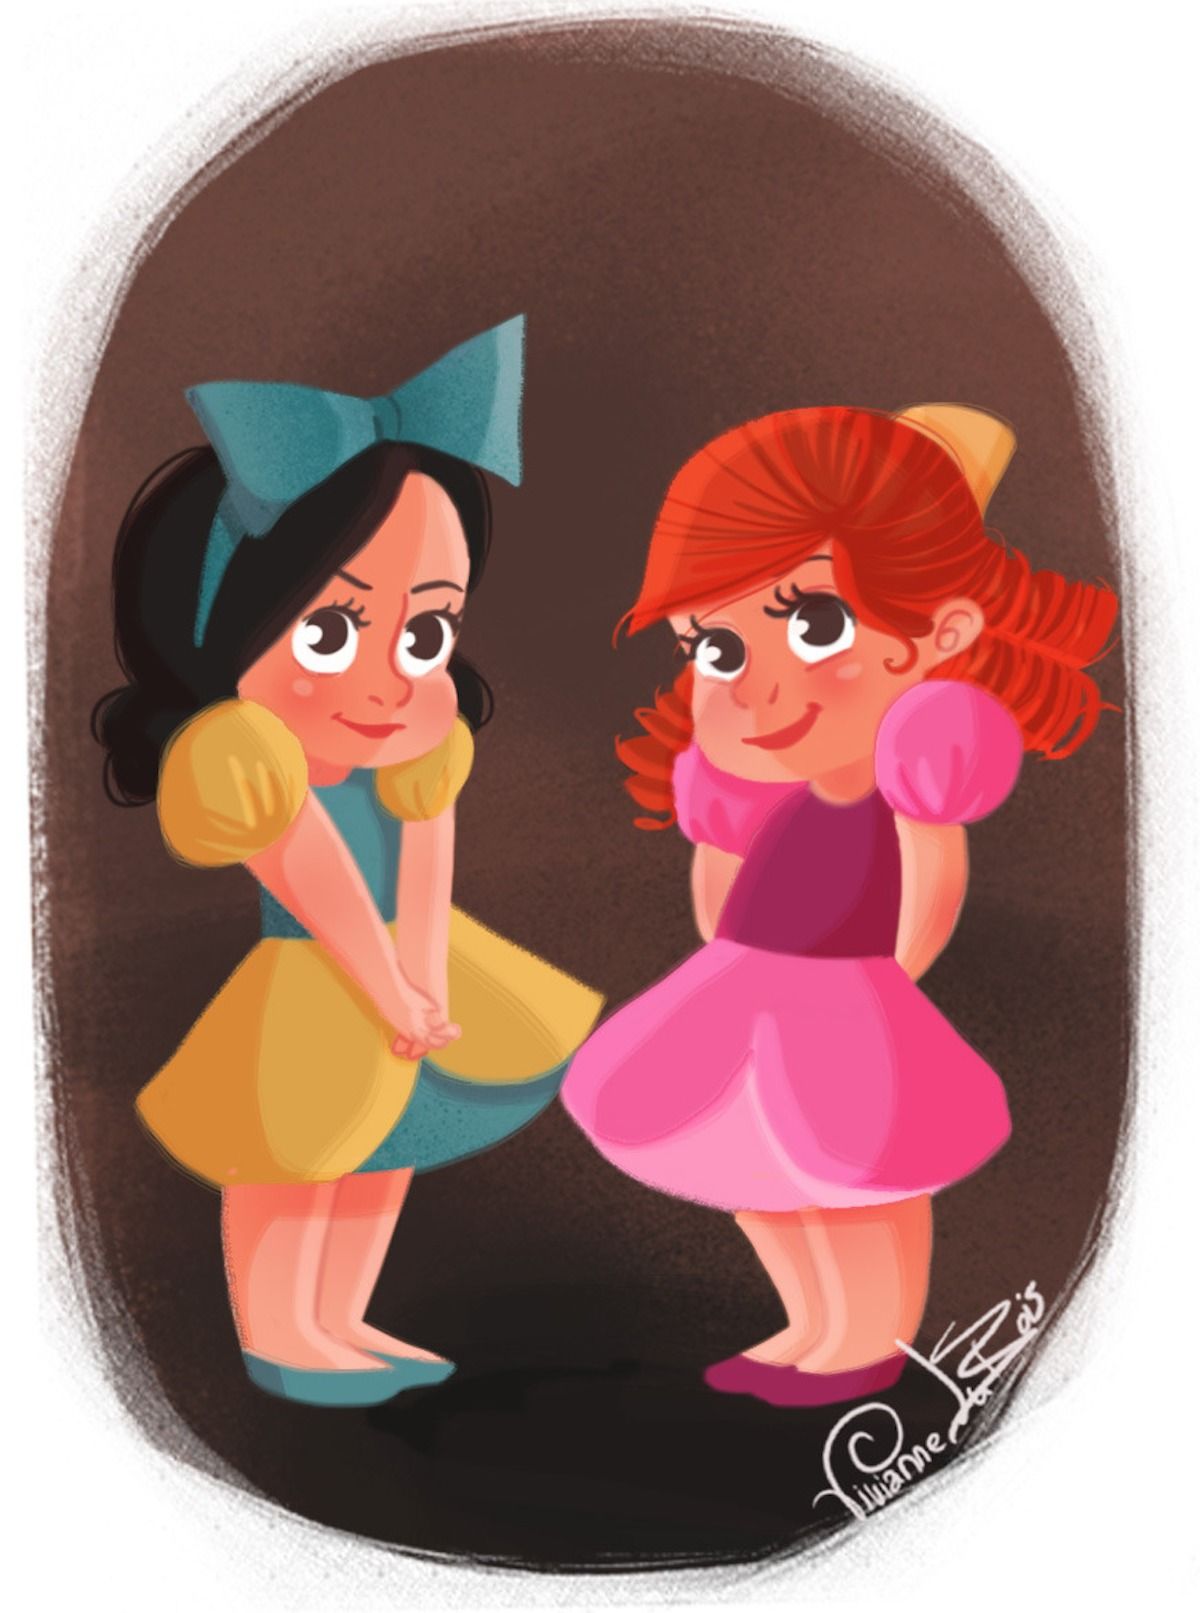 Les grandes méchantes Disney version petites filles #7